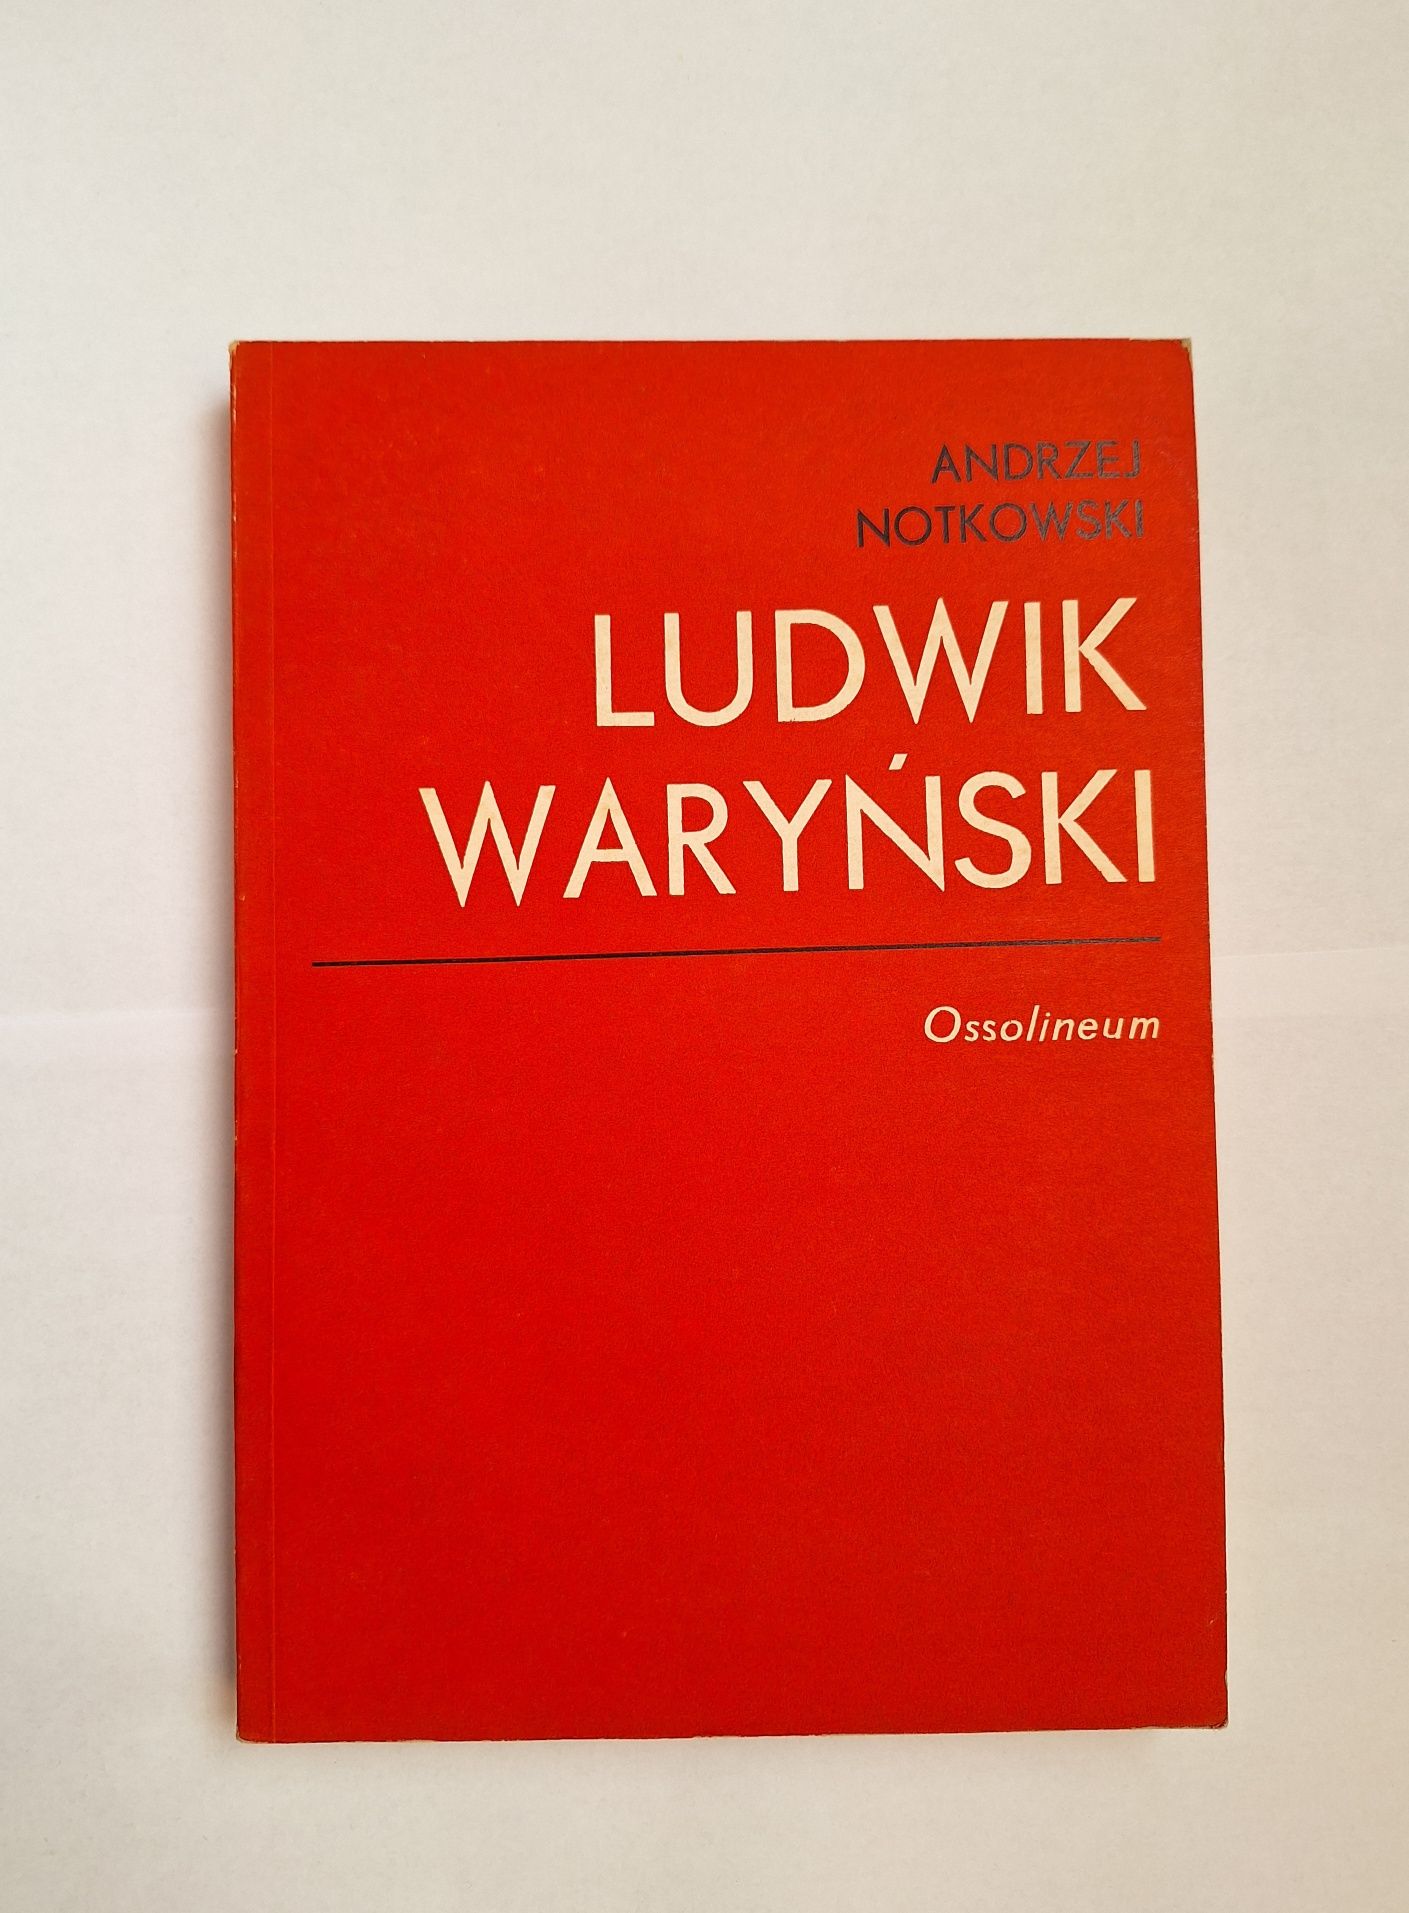 Ludwik Waryński, Andrzej Notkowski